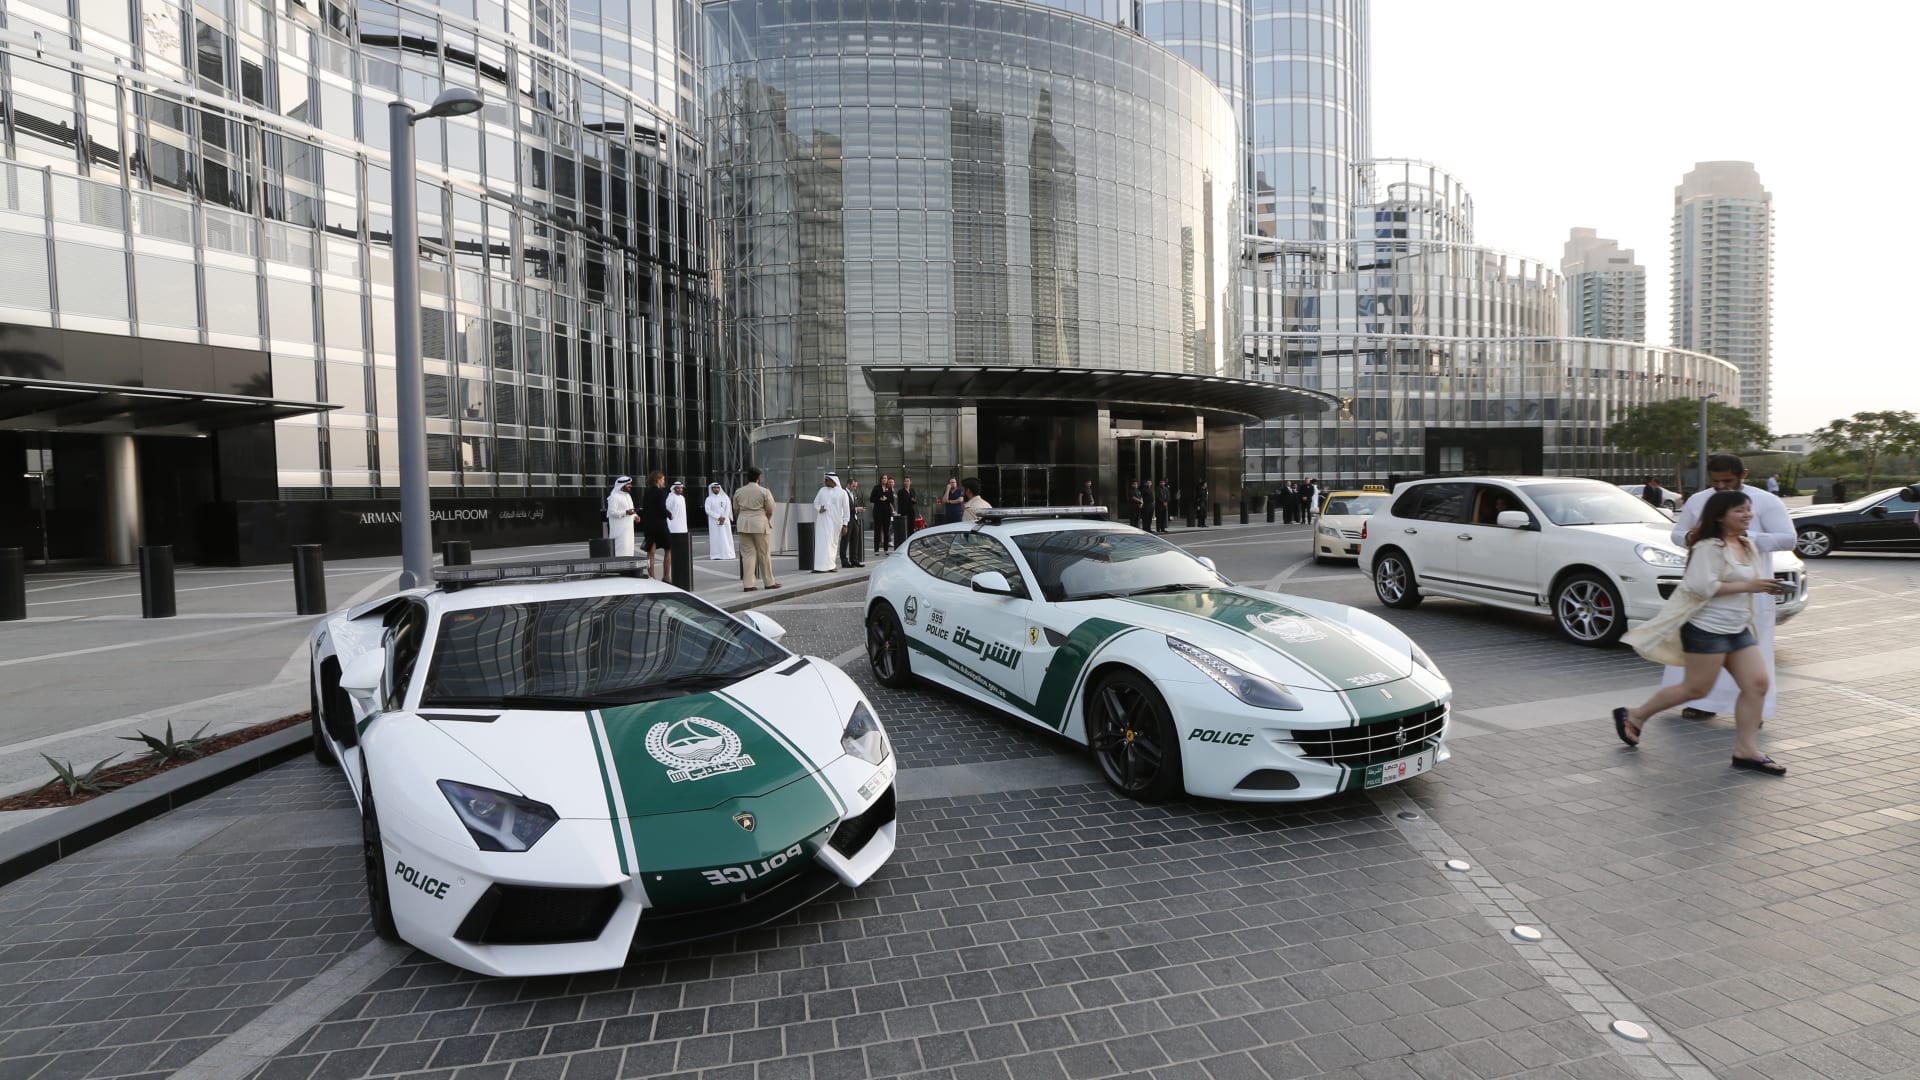 سيارات شرطة دبي